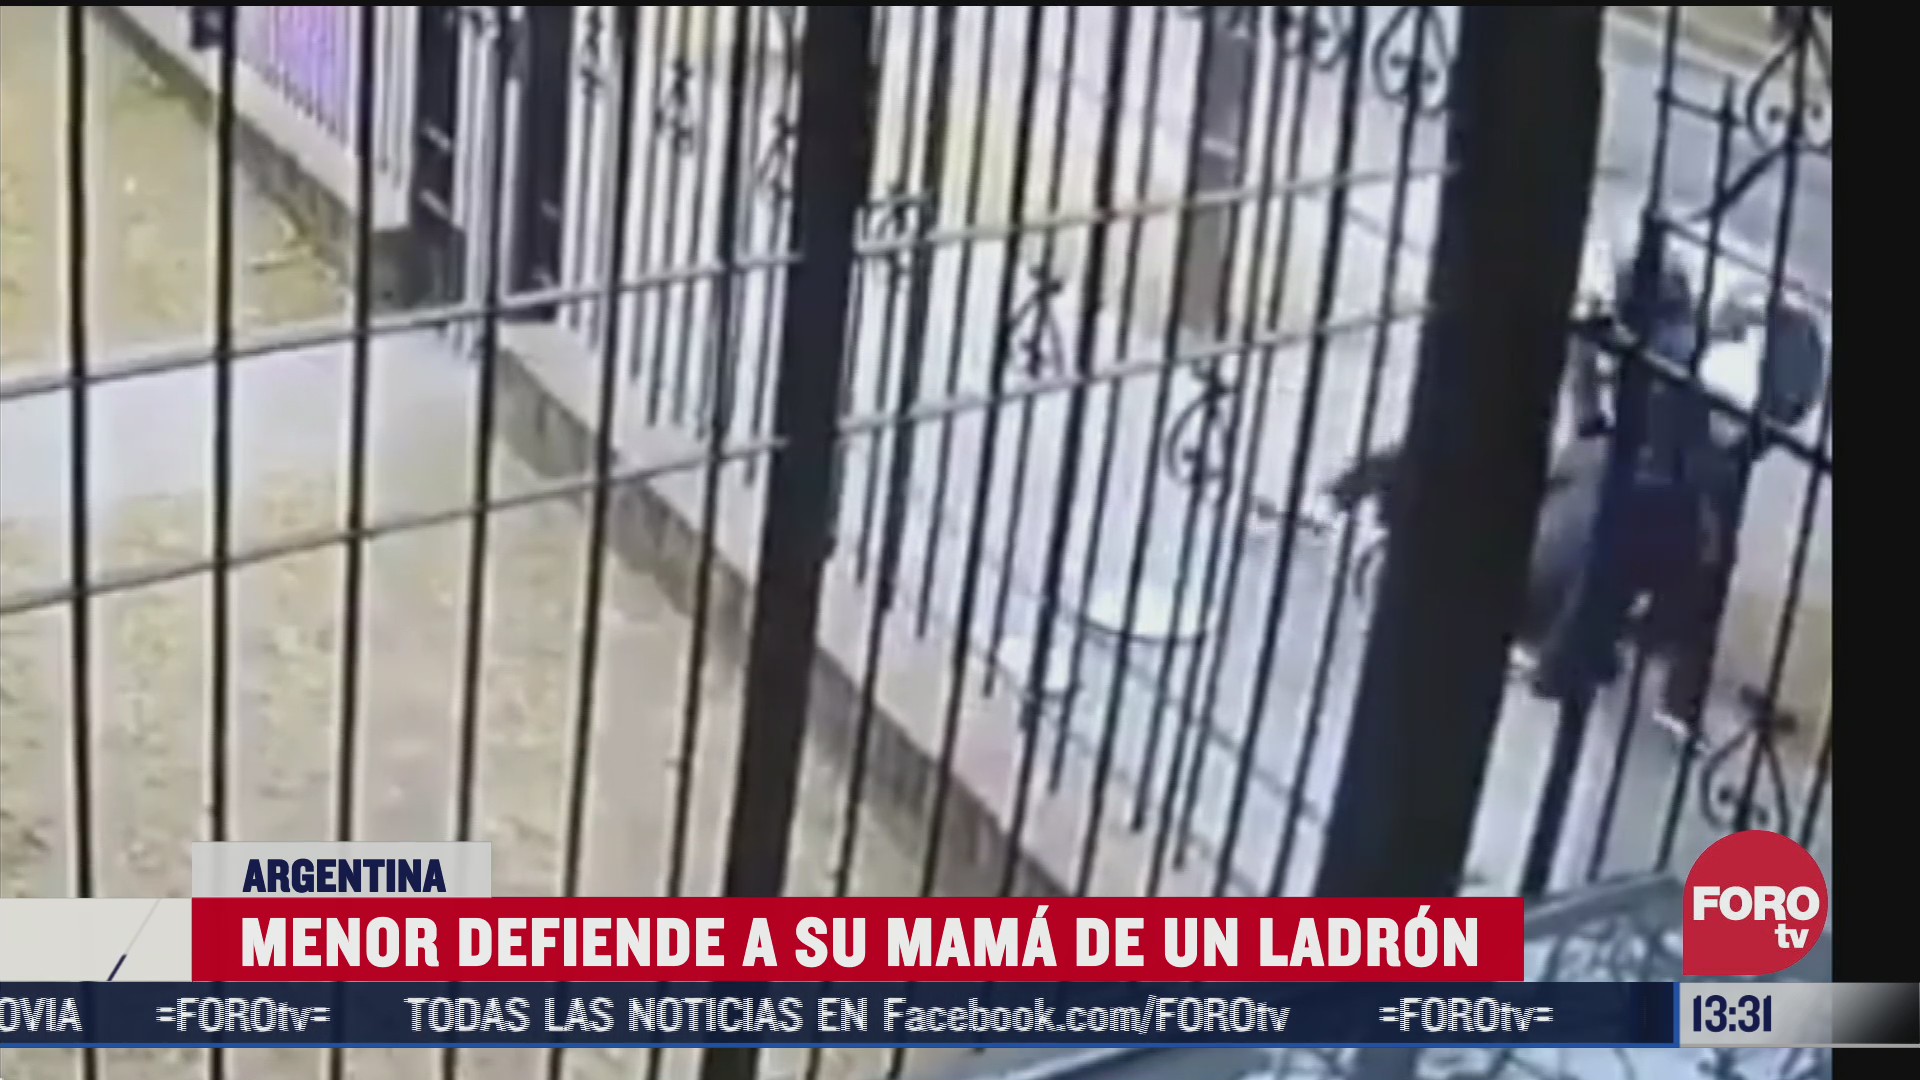 nino defiende a su mama de un ladron en argentina